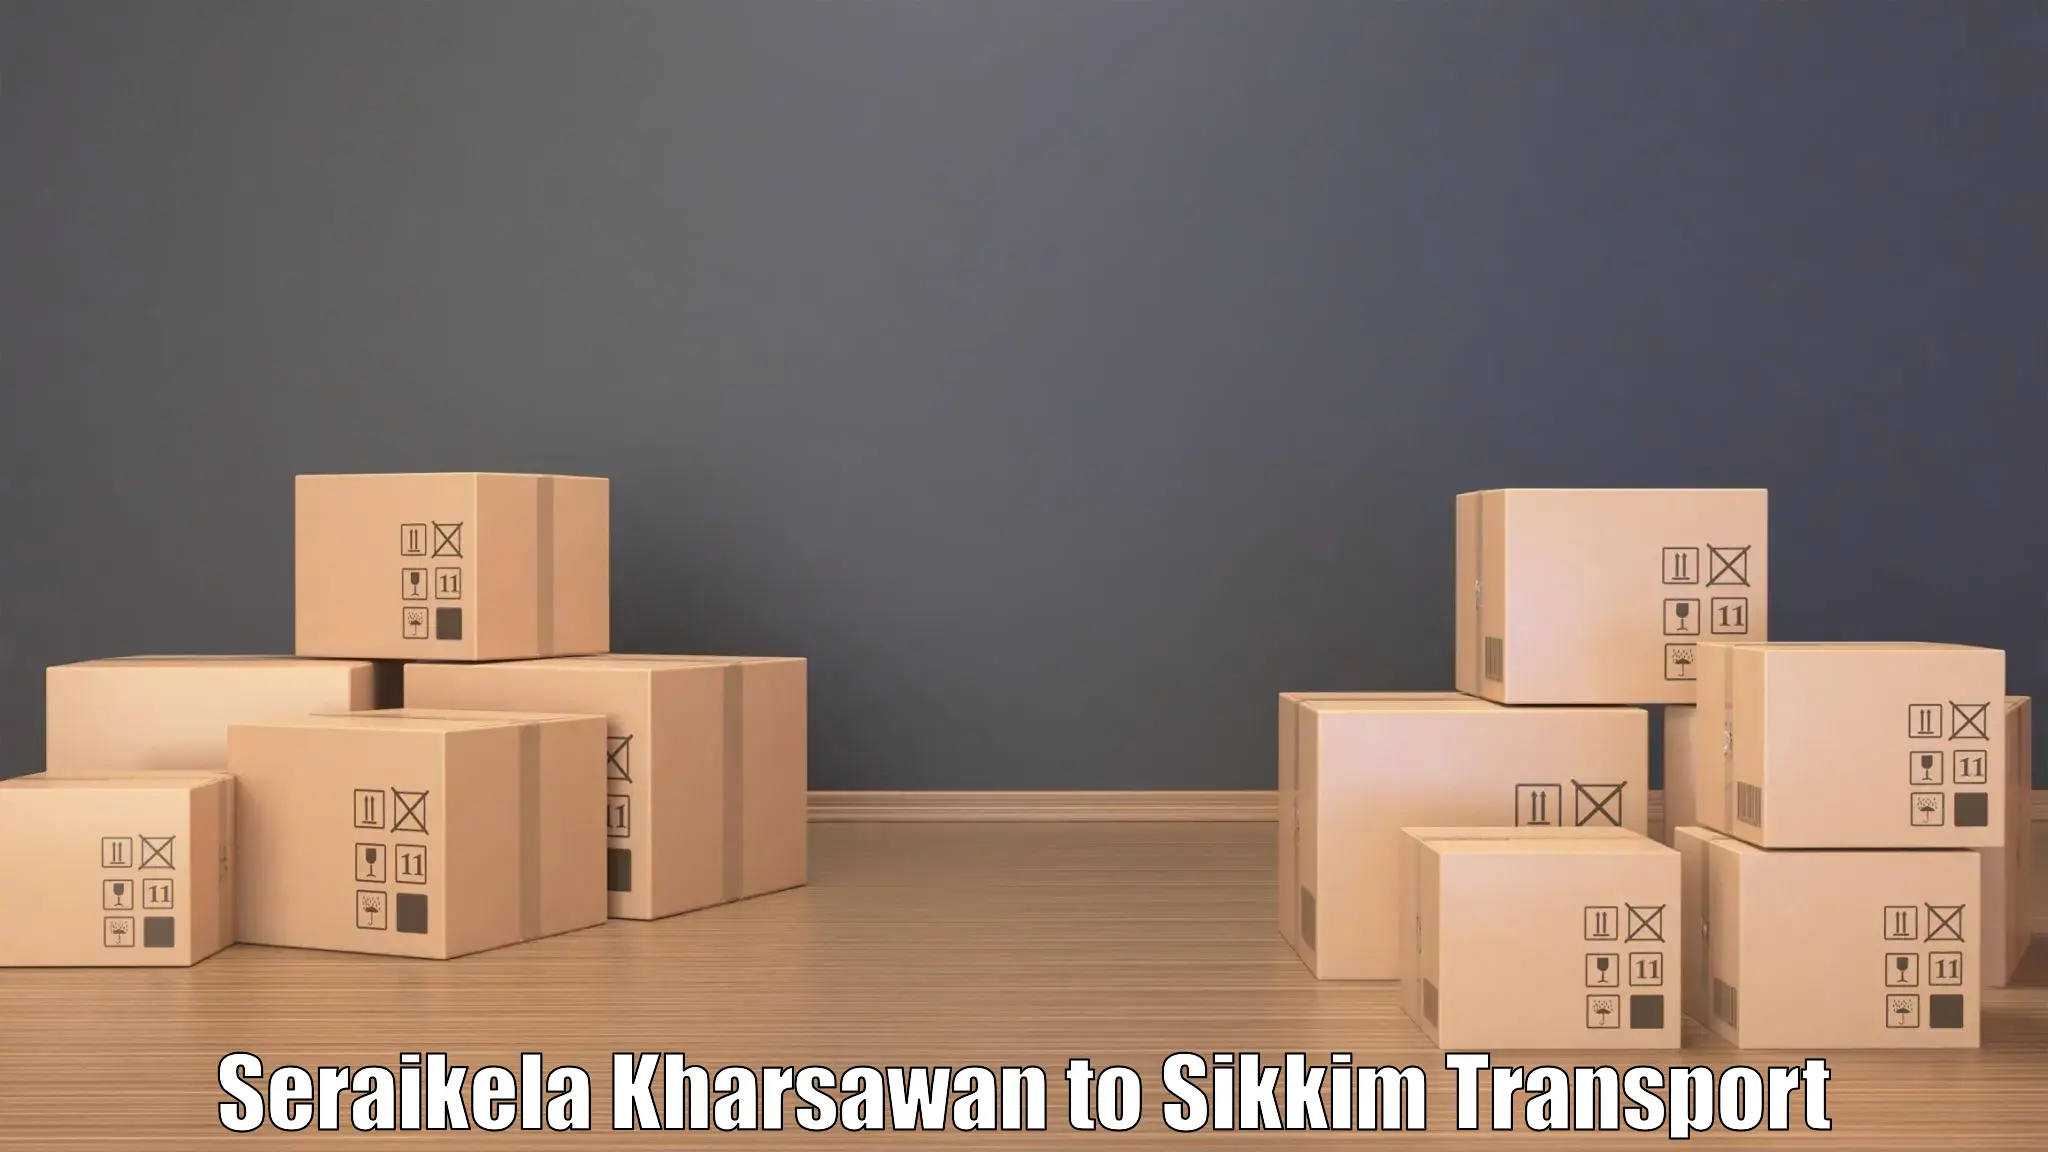 Delivery service Seraikela Kharsawan to Ravangla